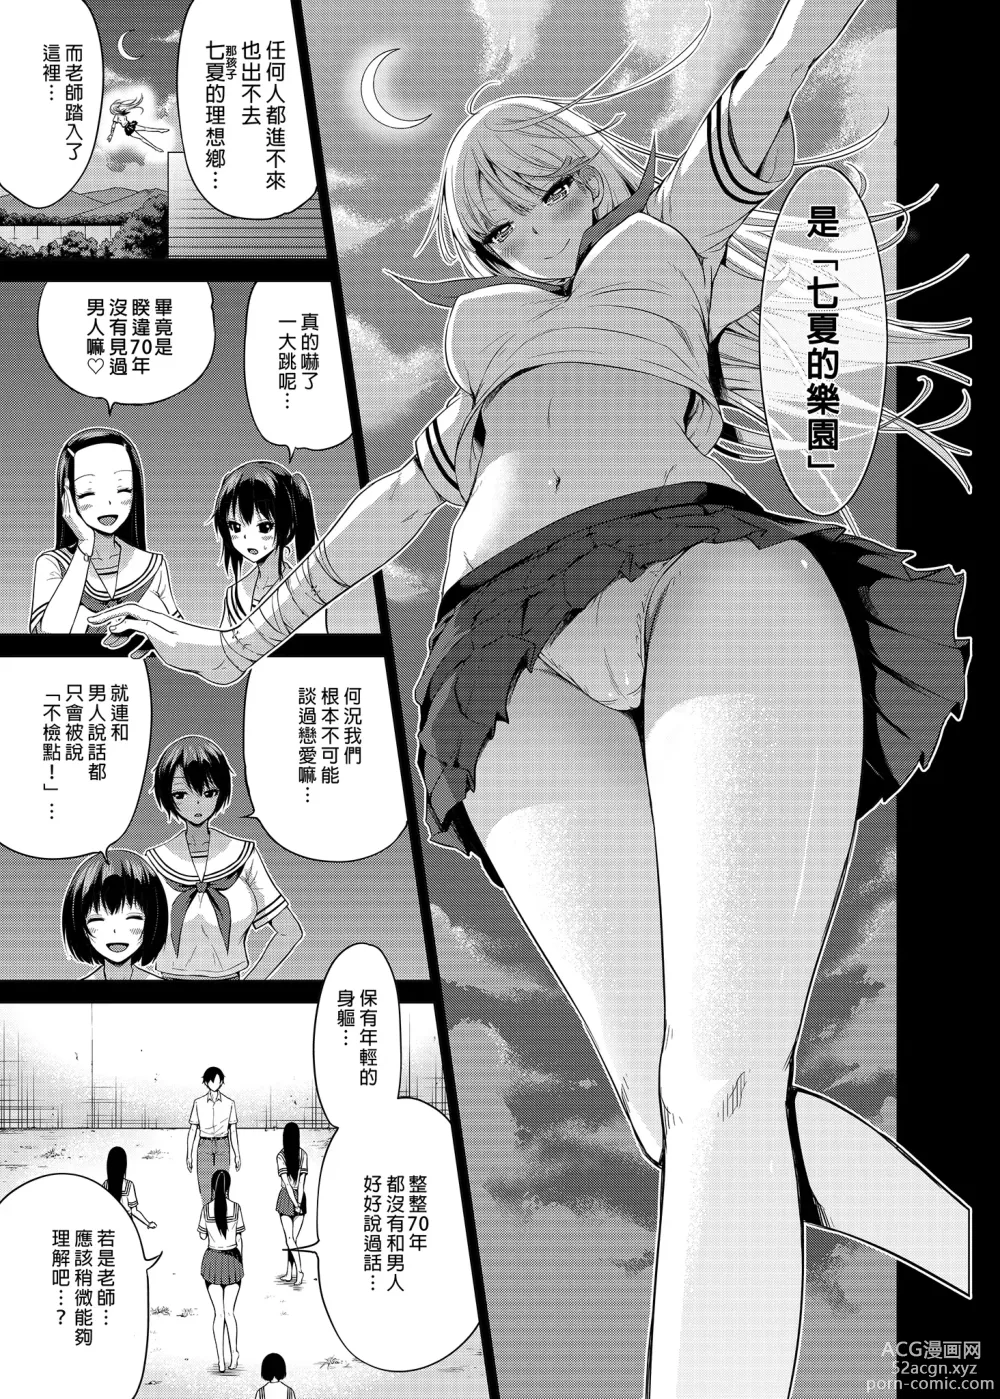 Page 50 of manga nanaka no rakuen4